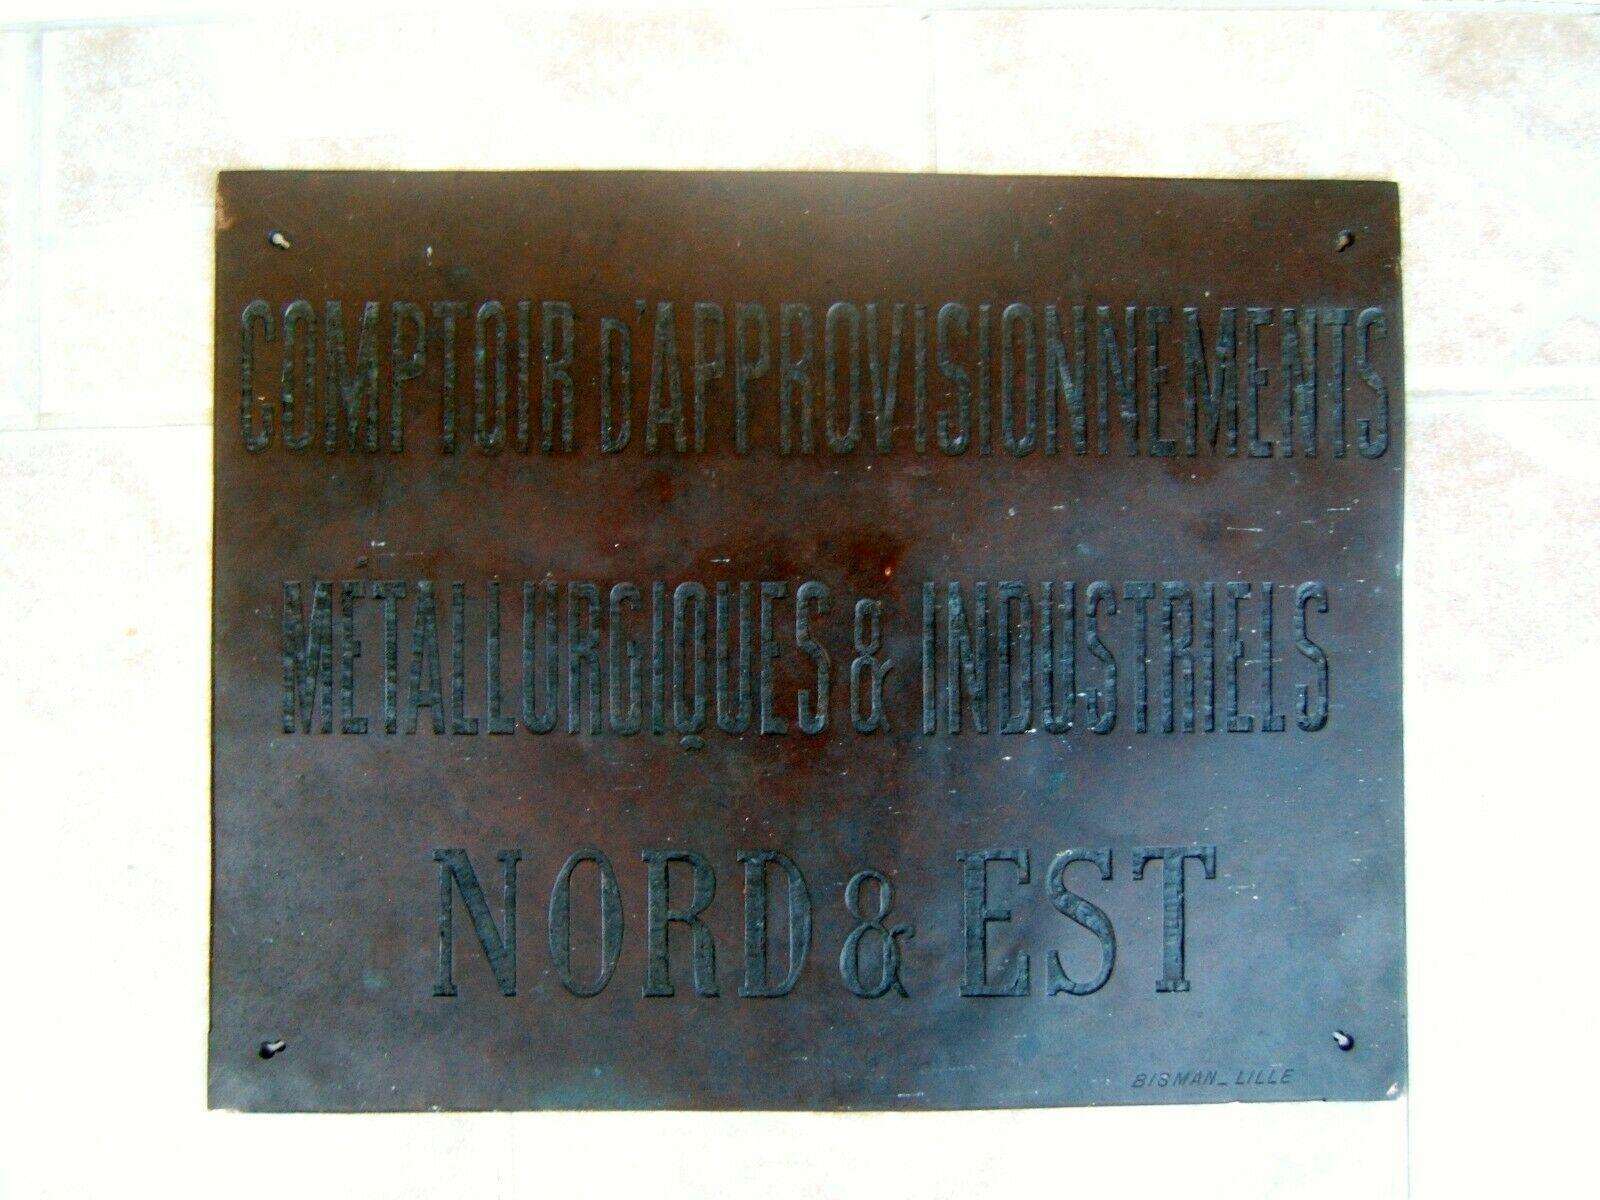 Ancien plaque objet publicitaire en bronze ou cuivre 1 